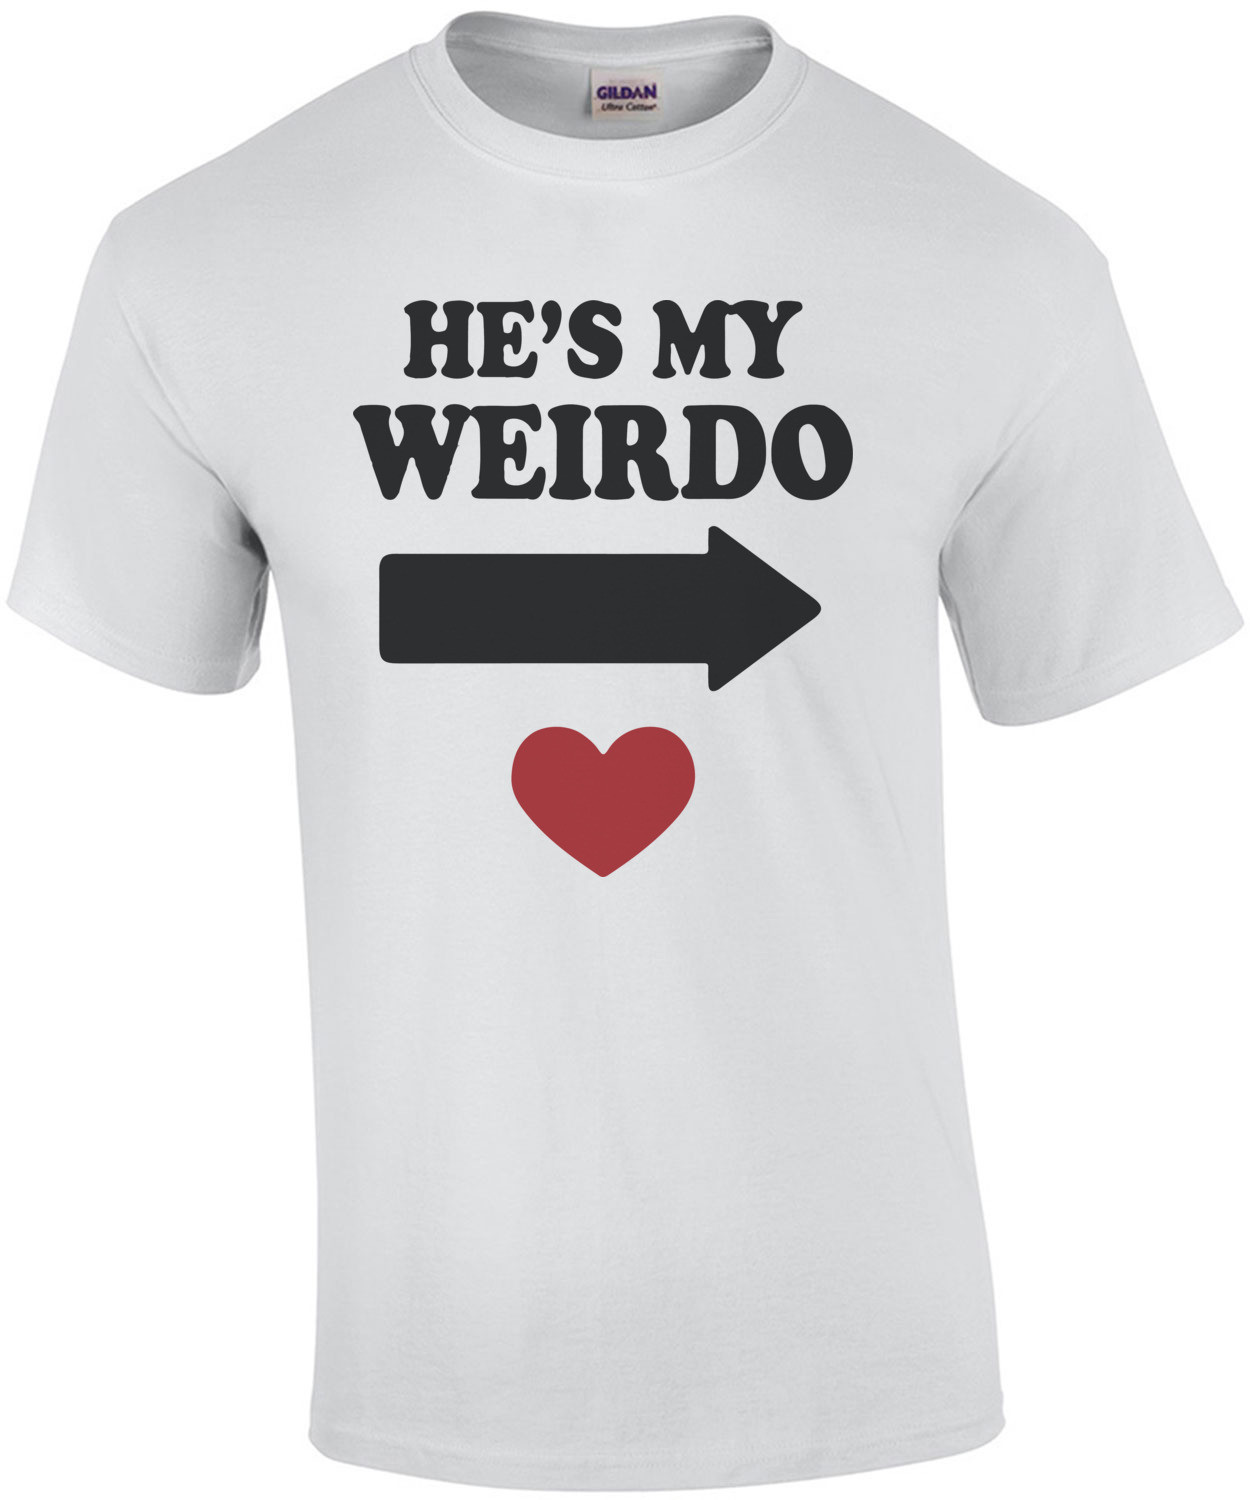 He's My Weirdo T-Shirt